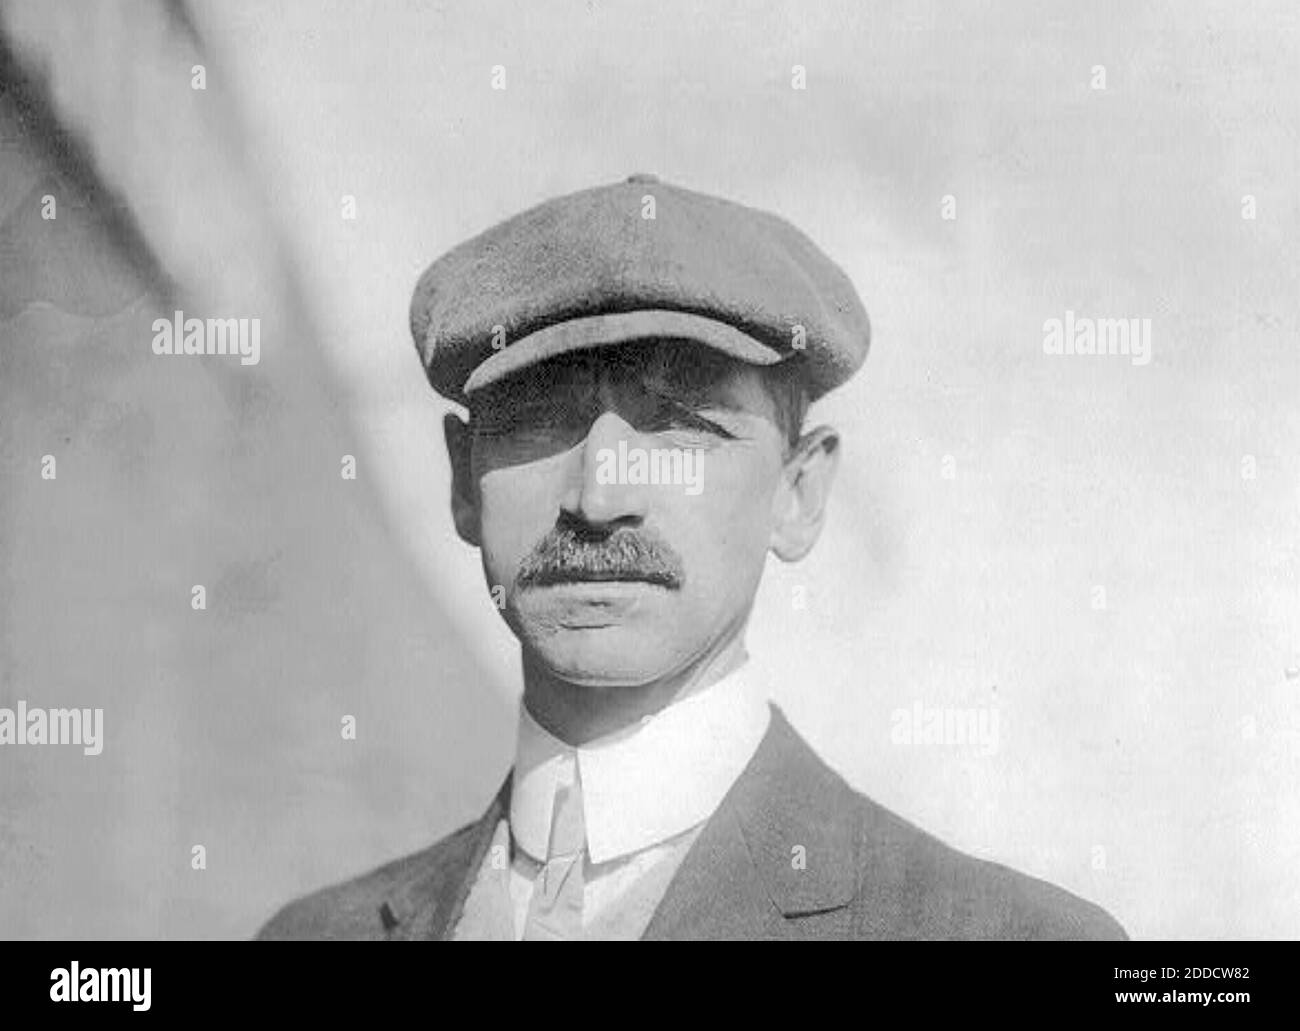 GLENN CURTIS (1878-1930) pionnier américain de l'aviation et de l'automobile vers 1909. Photo: Bain News Service Banque D'Images